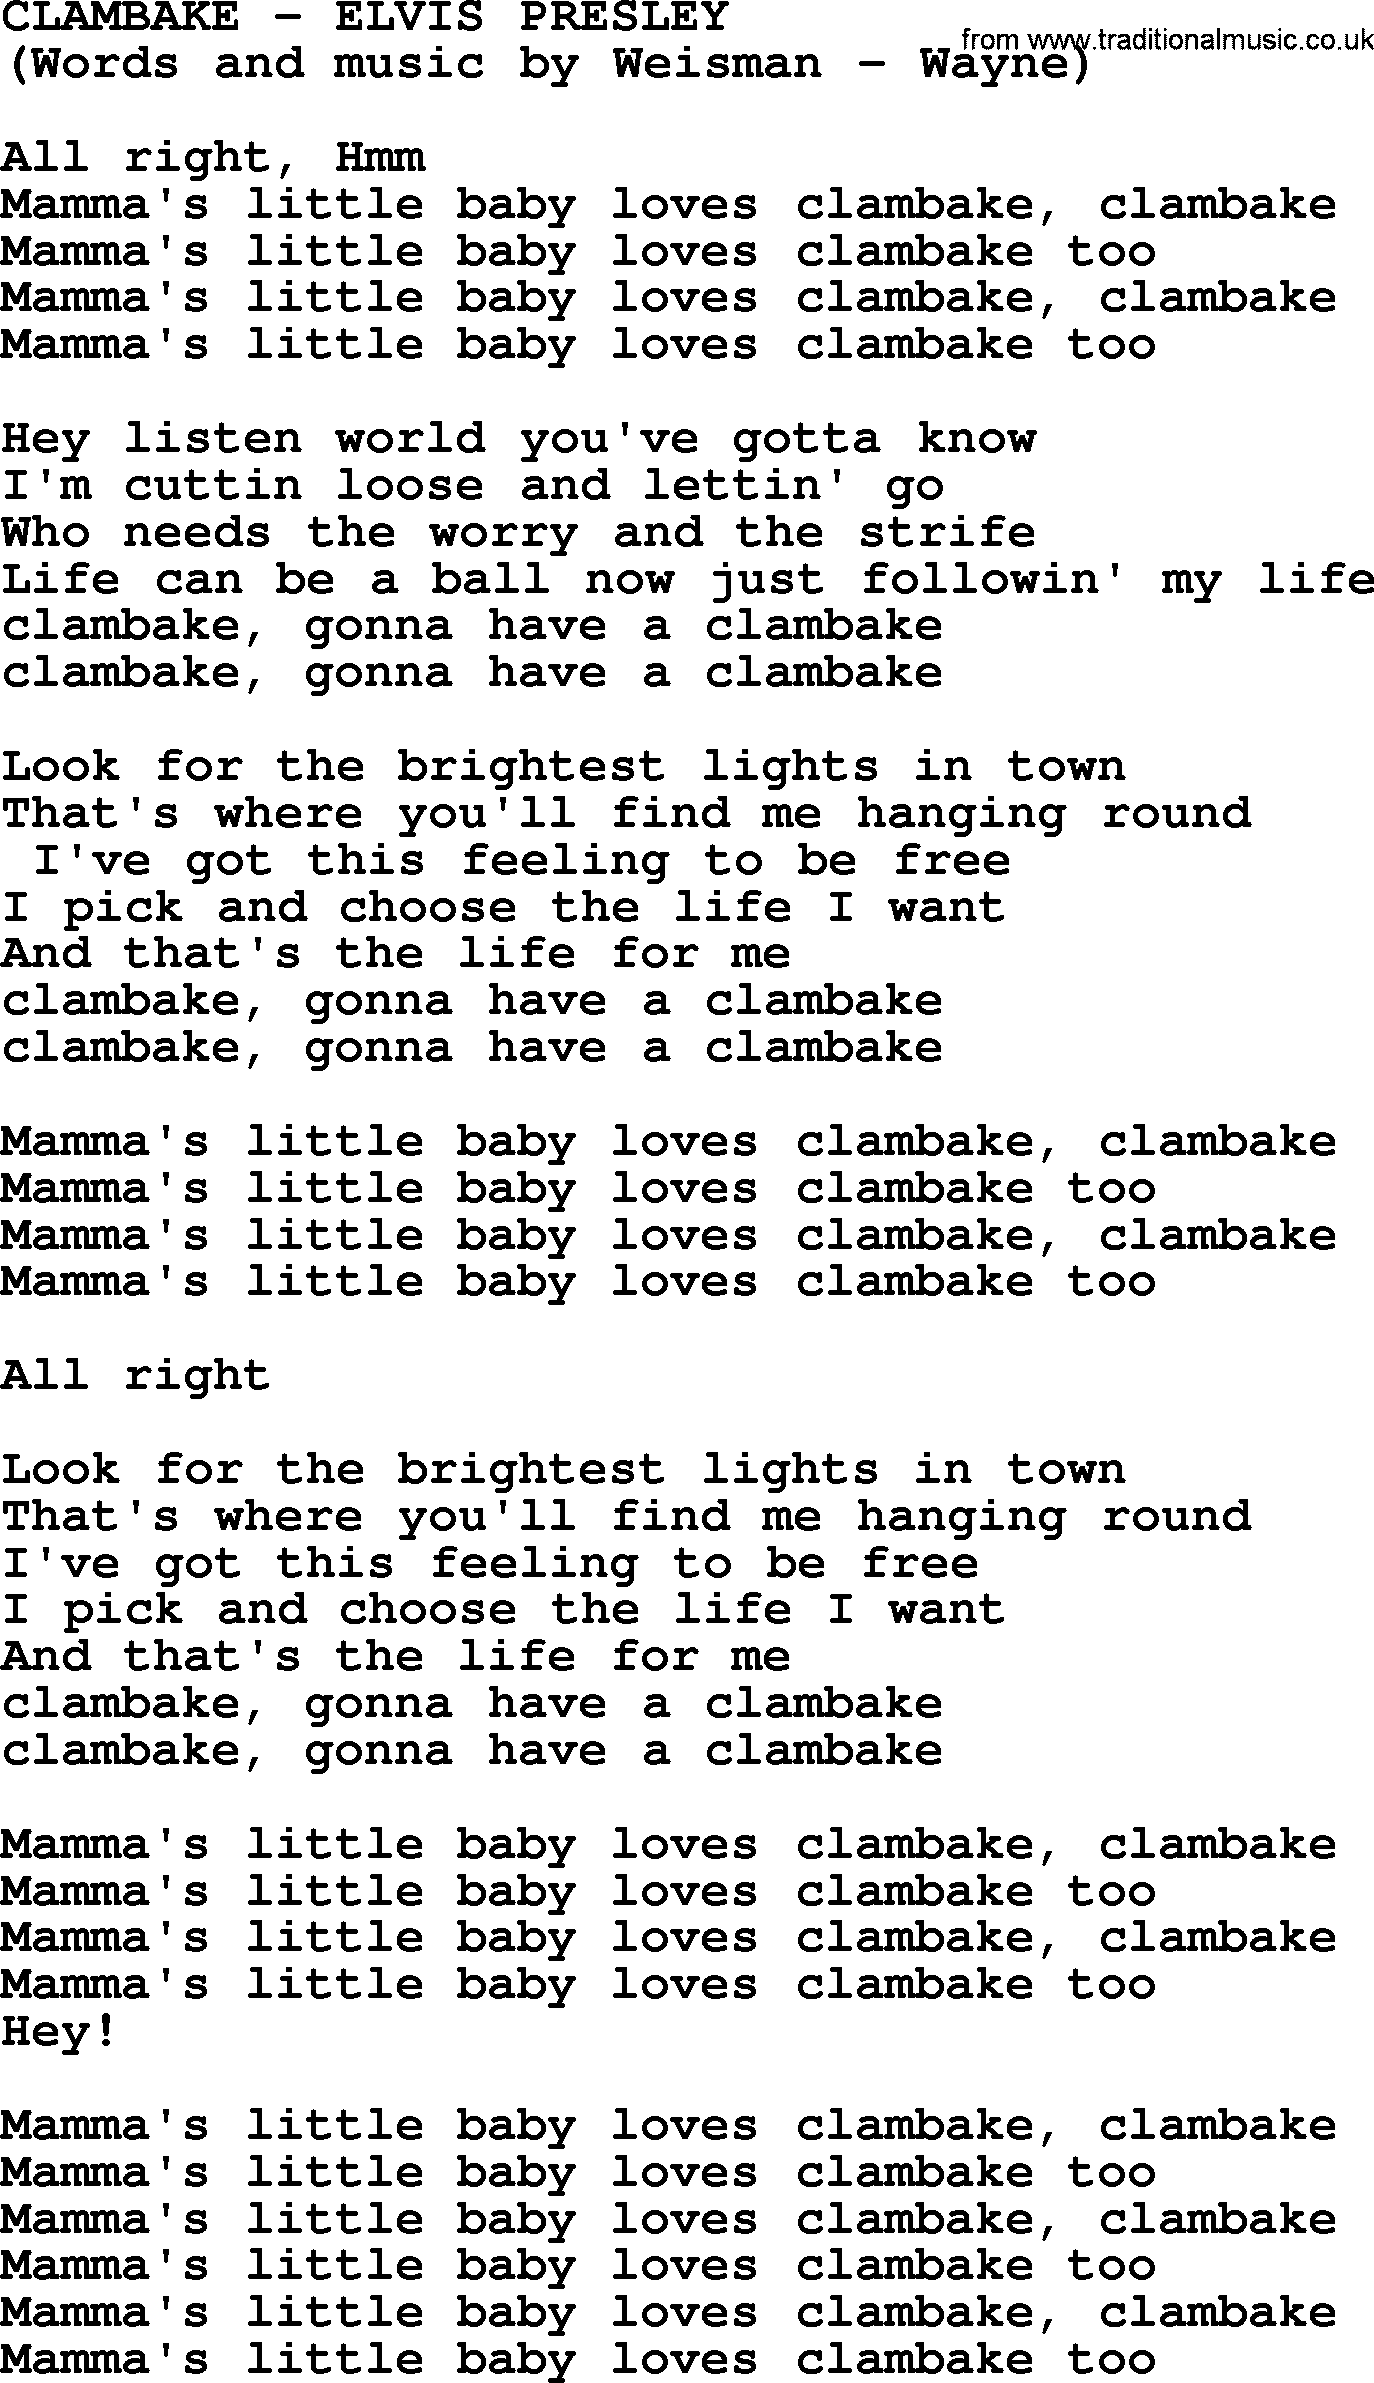 Elvis Presley song: Clambake lyrics